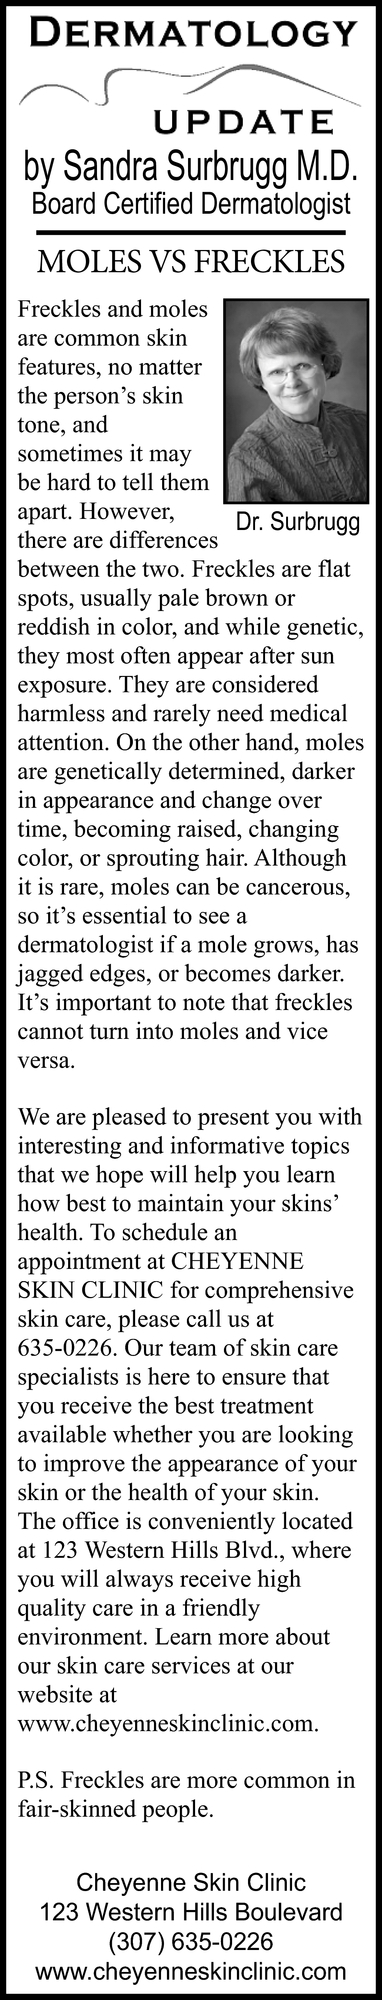 Dermatology Update